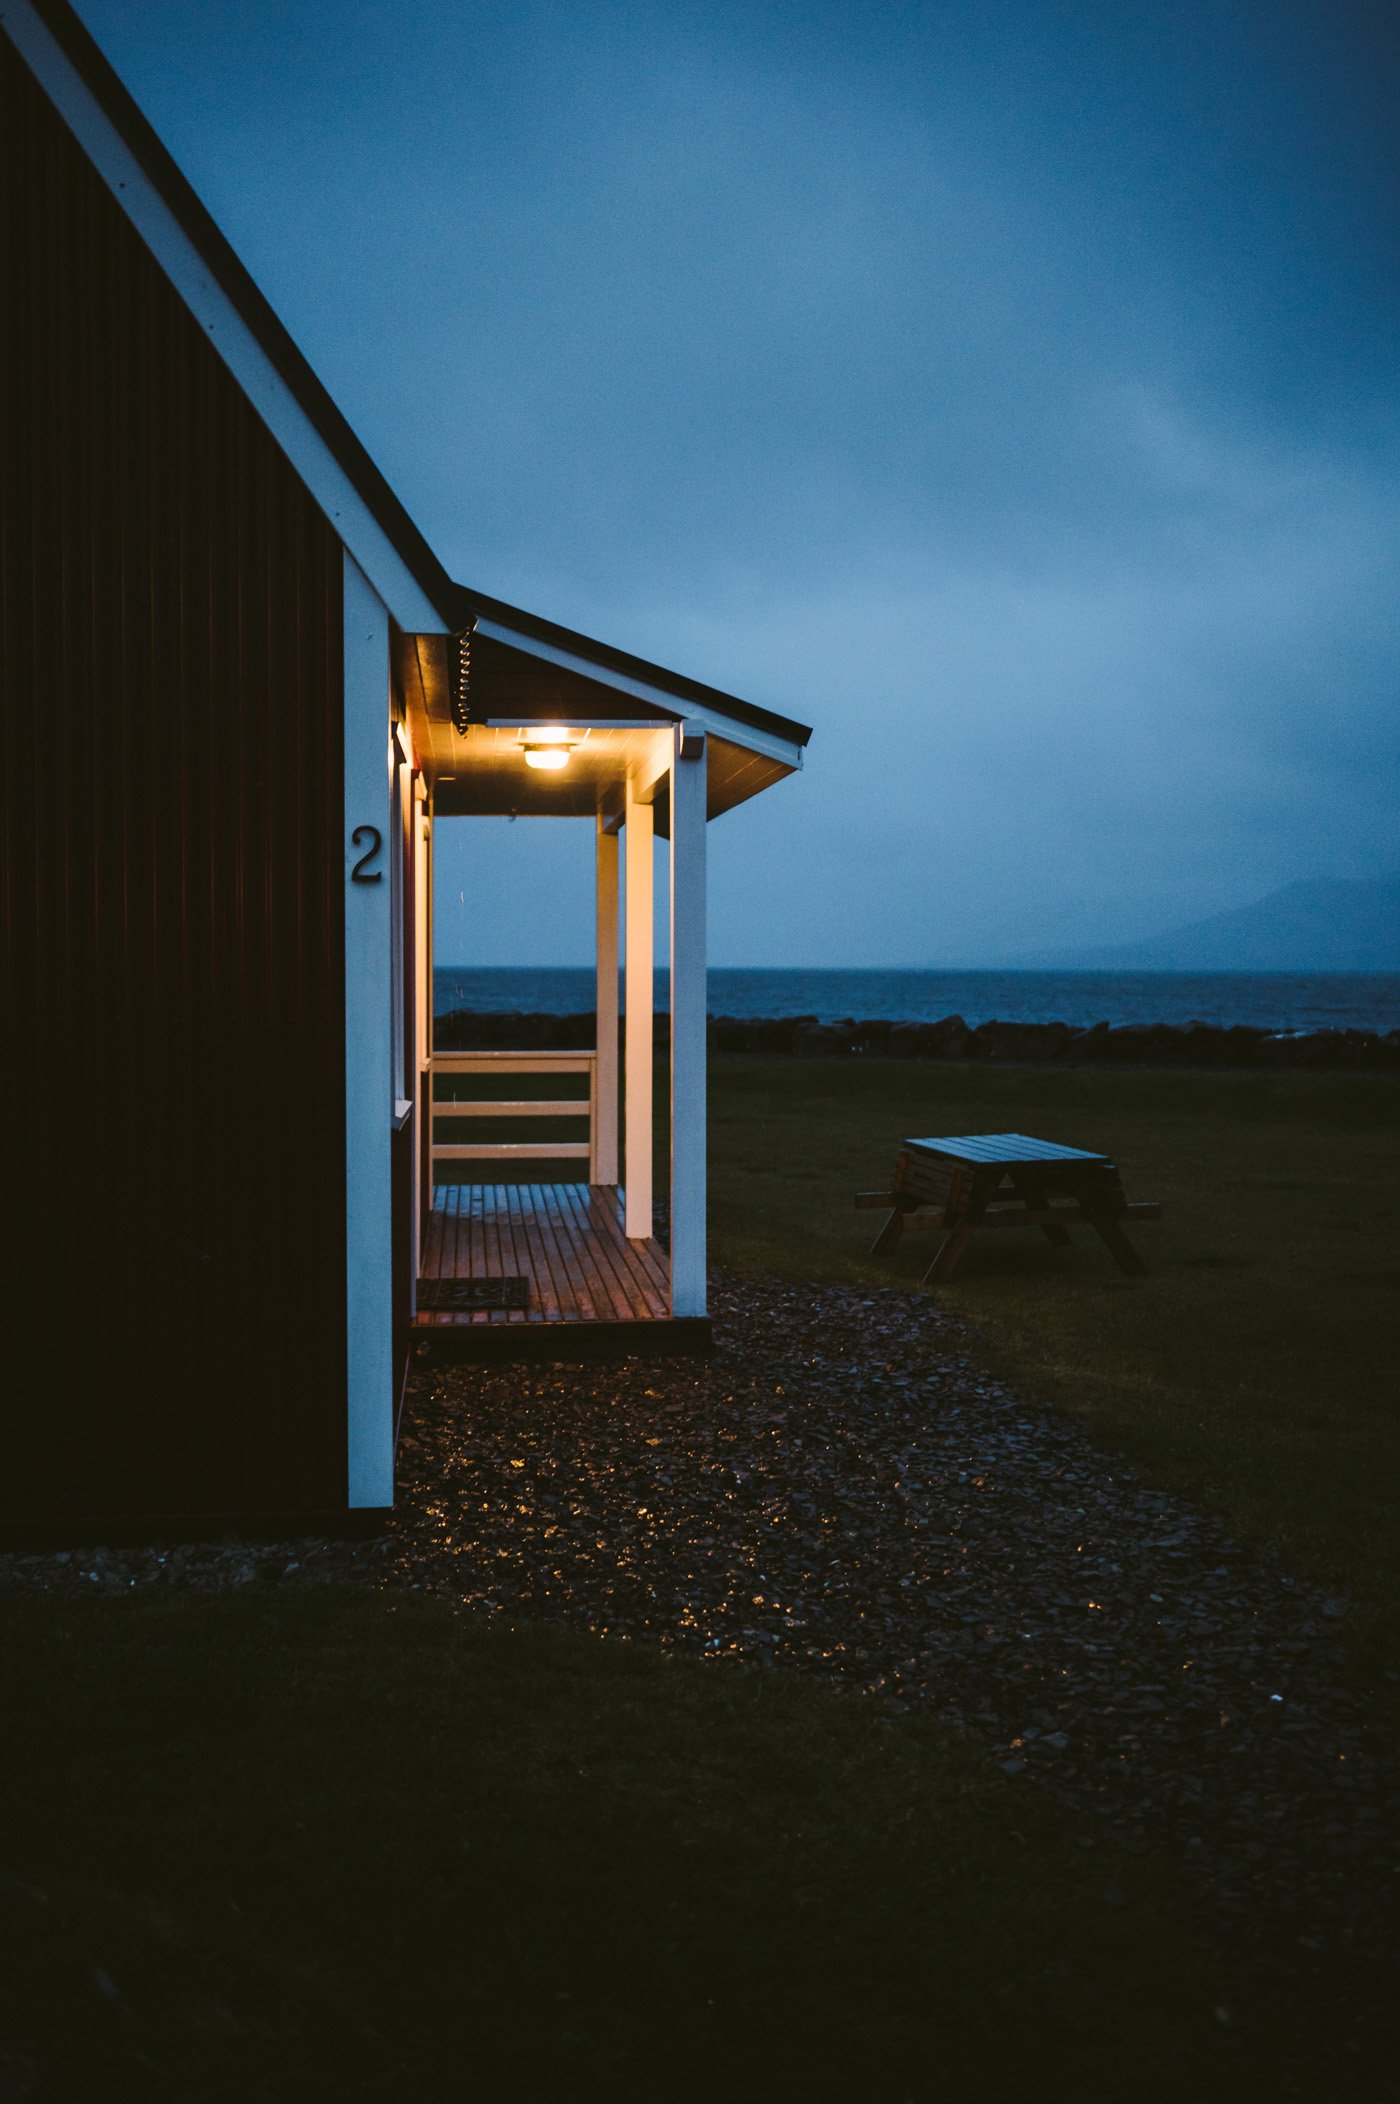 Mjóeyri guesthouse in Eskifjorður